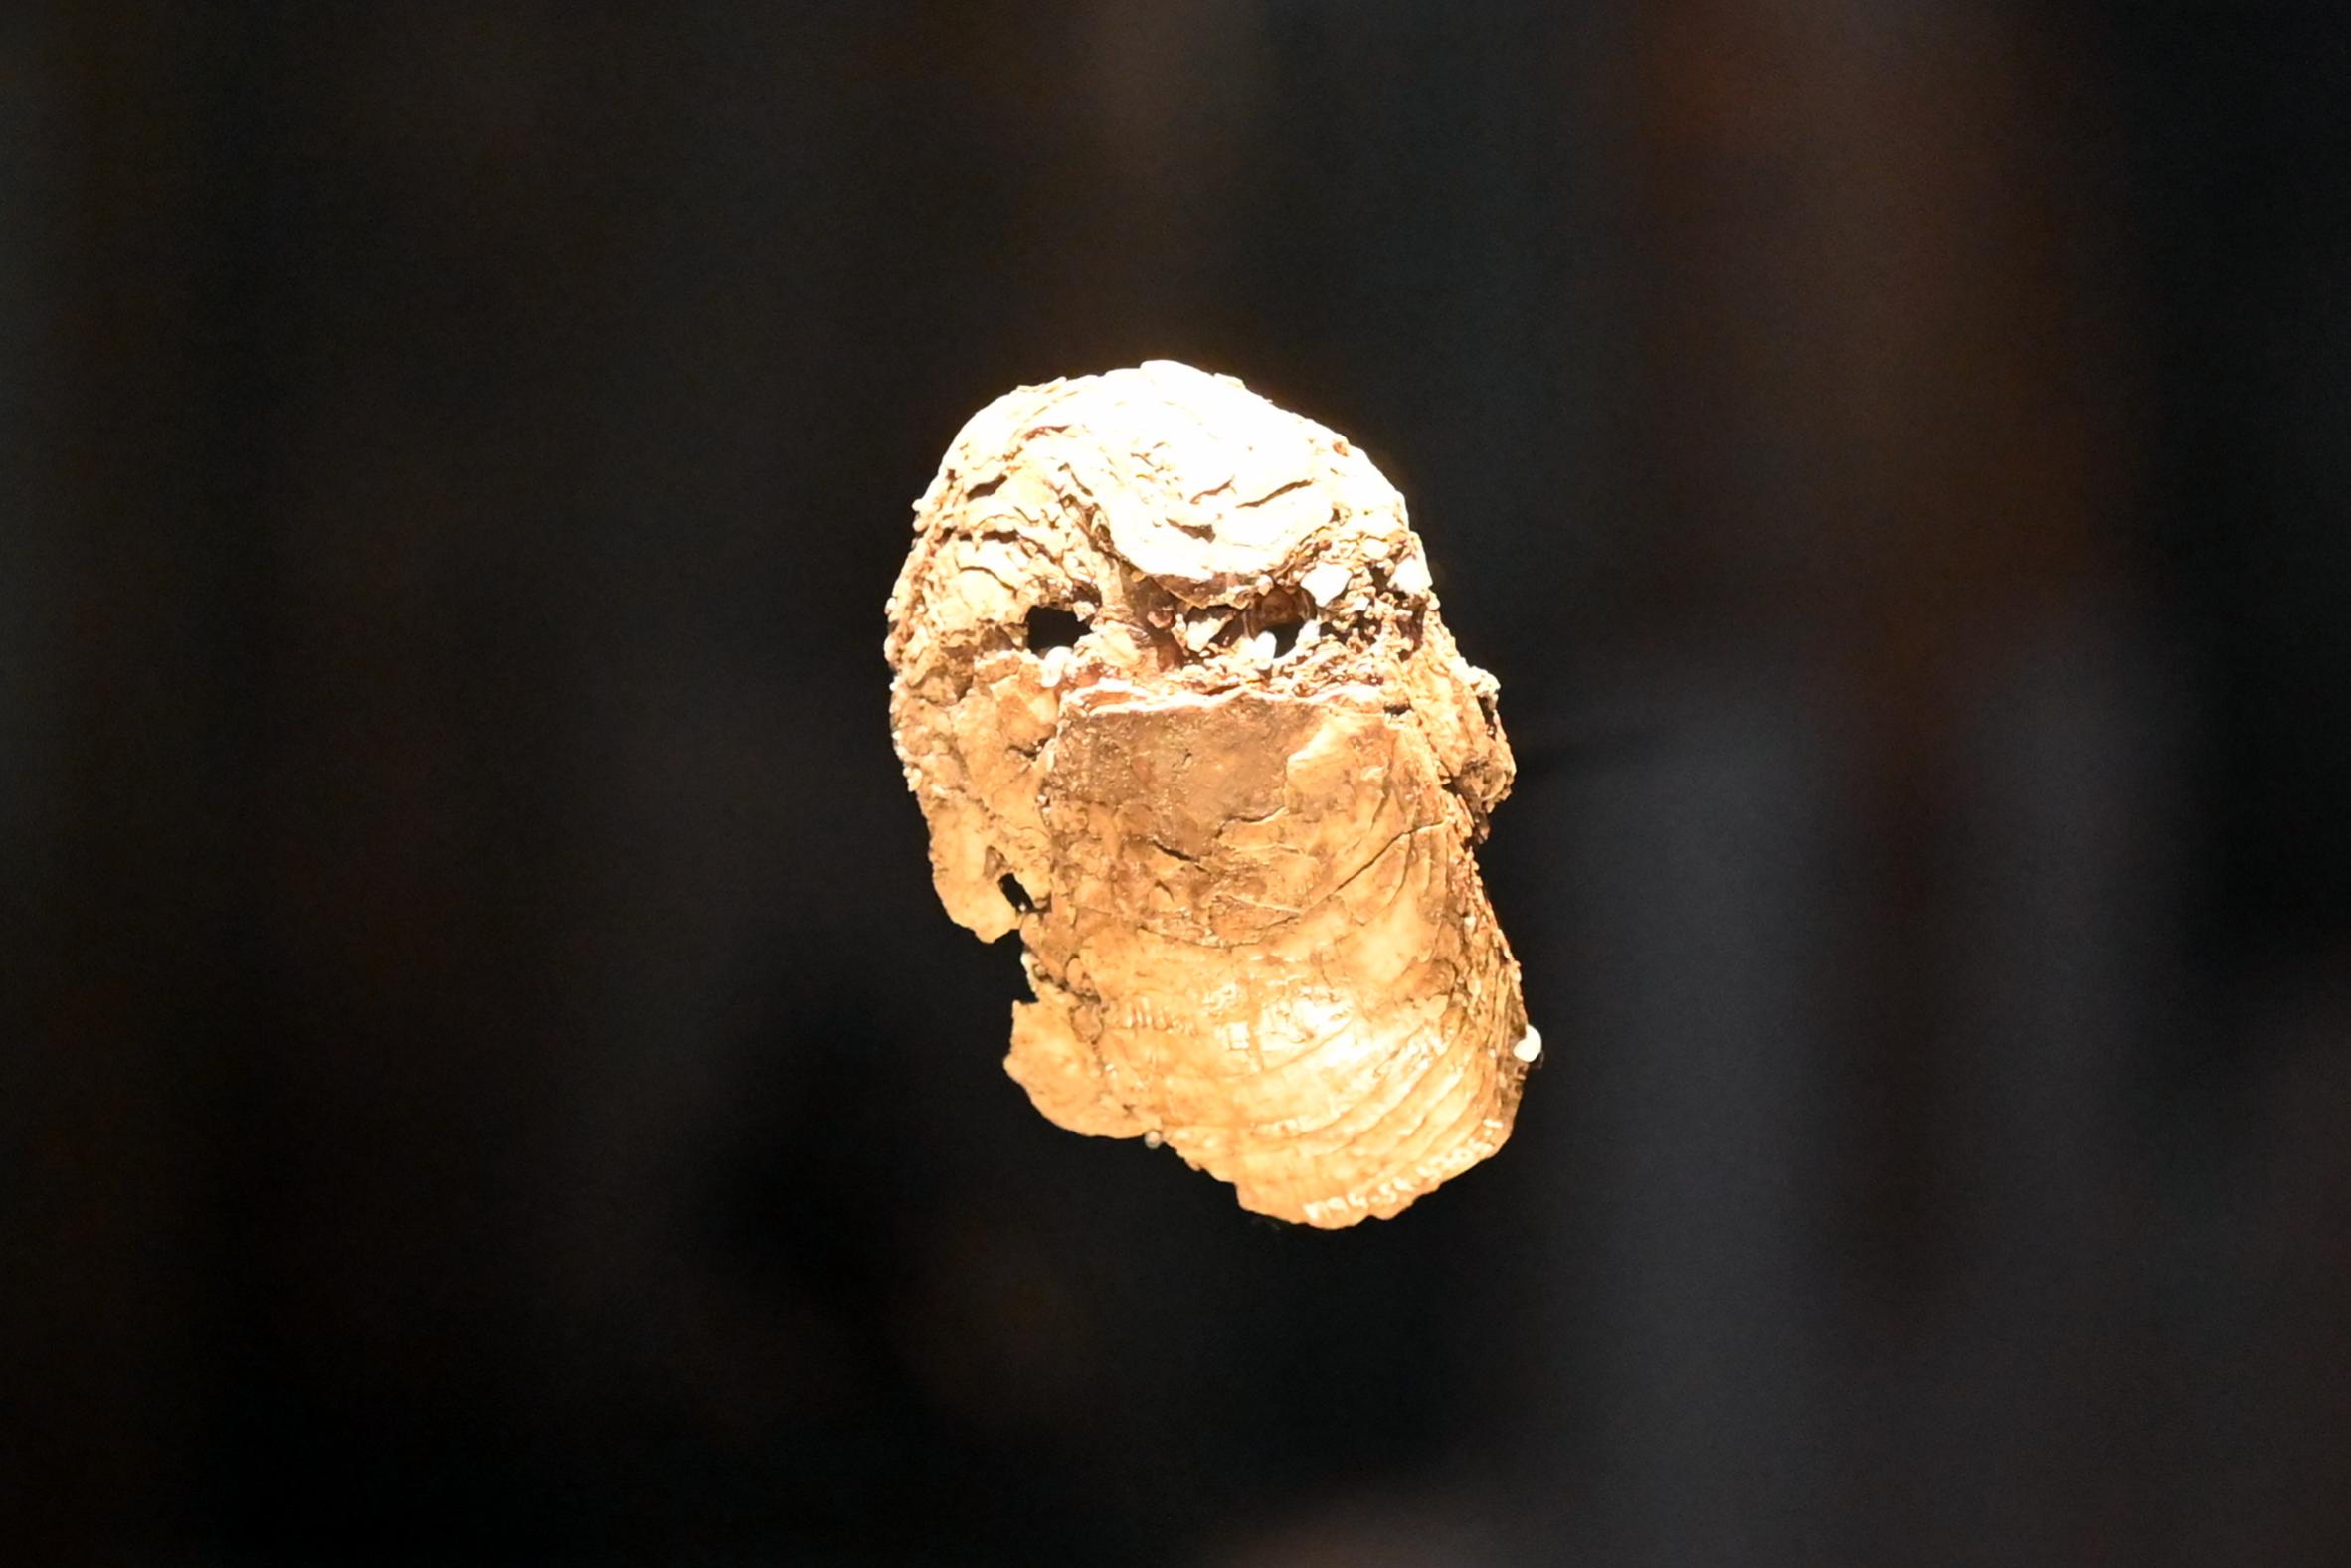 Spondylusmuschel, Neolithikum (Jungsteinzeit), 5500 - 1700 v. Chr., 5100 v. Chr.